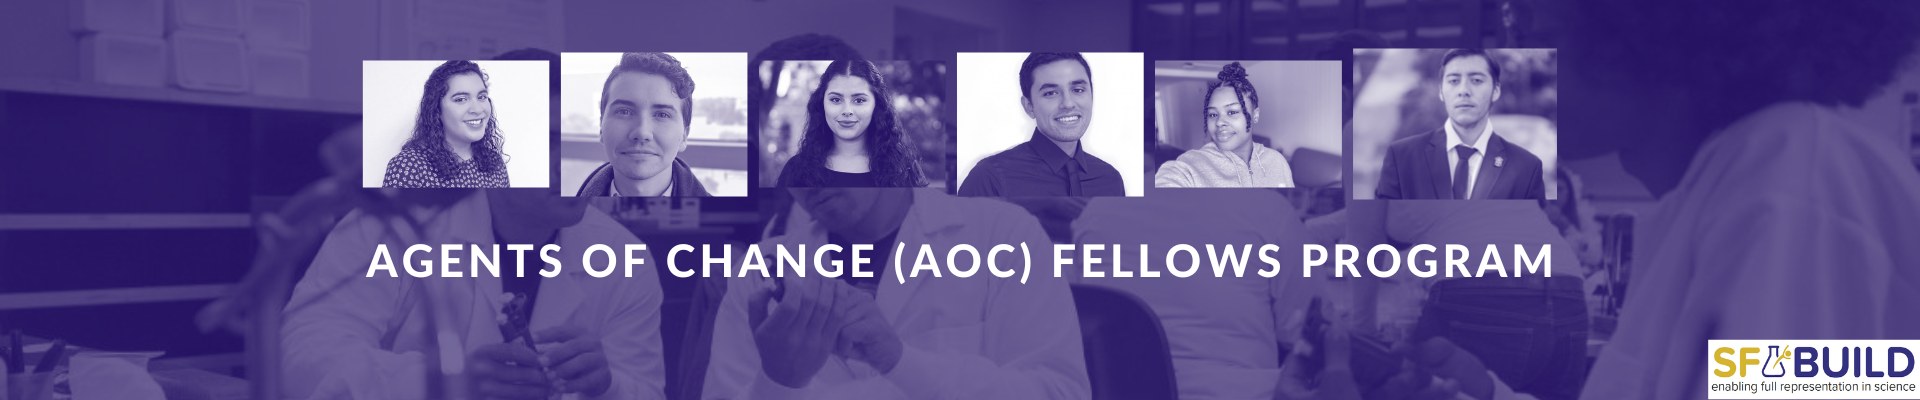 Website banner for AOC Fellows Program